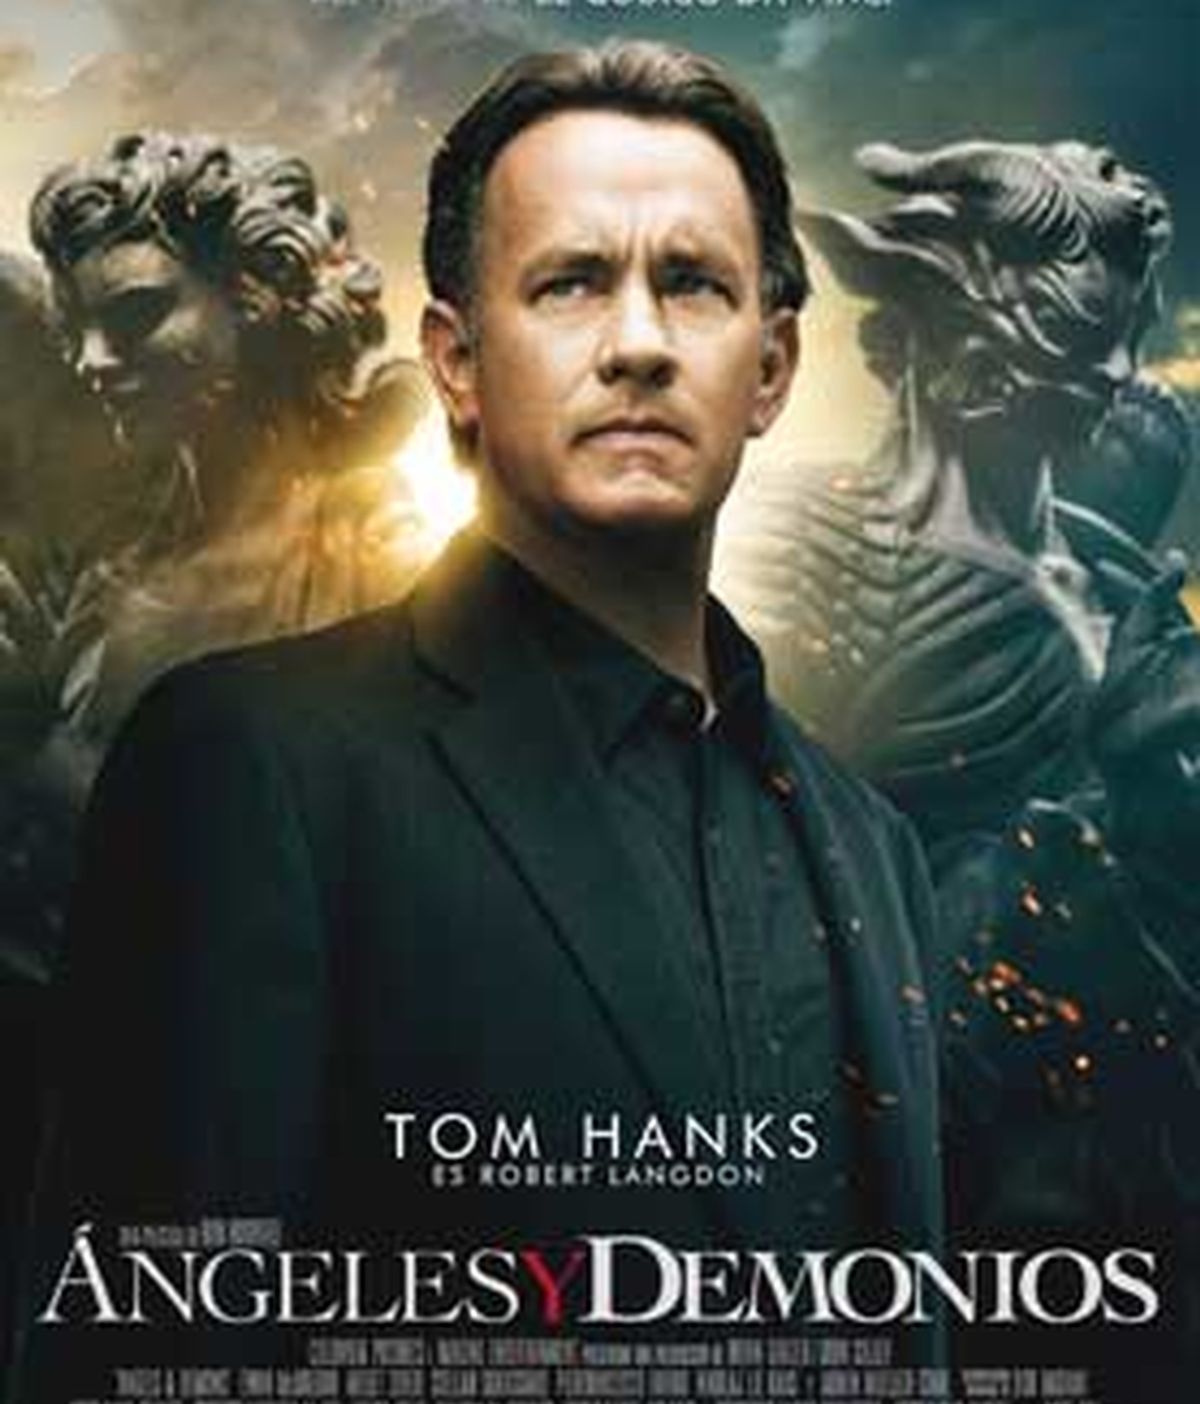 Tom Hanks, volverá a ser el protagonista de Ángeles y demonios, que regresa a los cines con polémica.  Poster Oficial de la película.